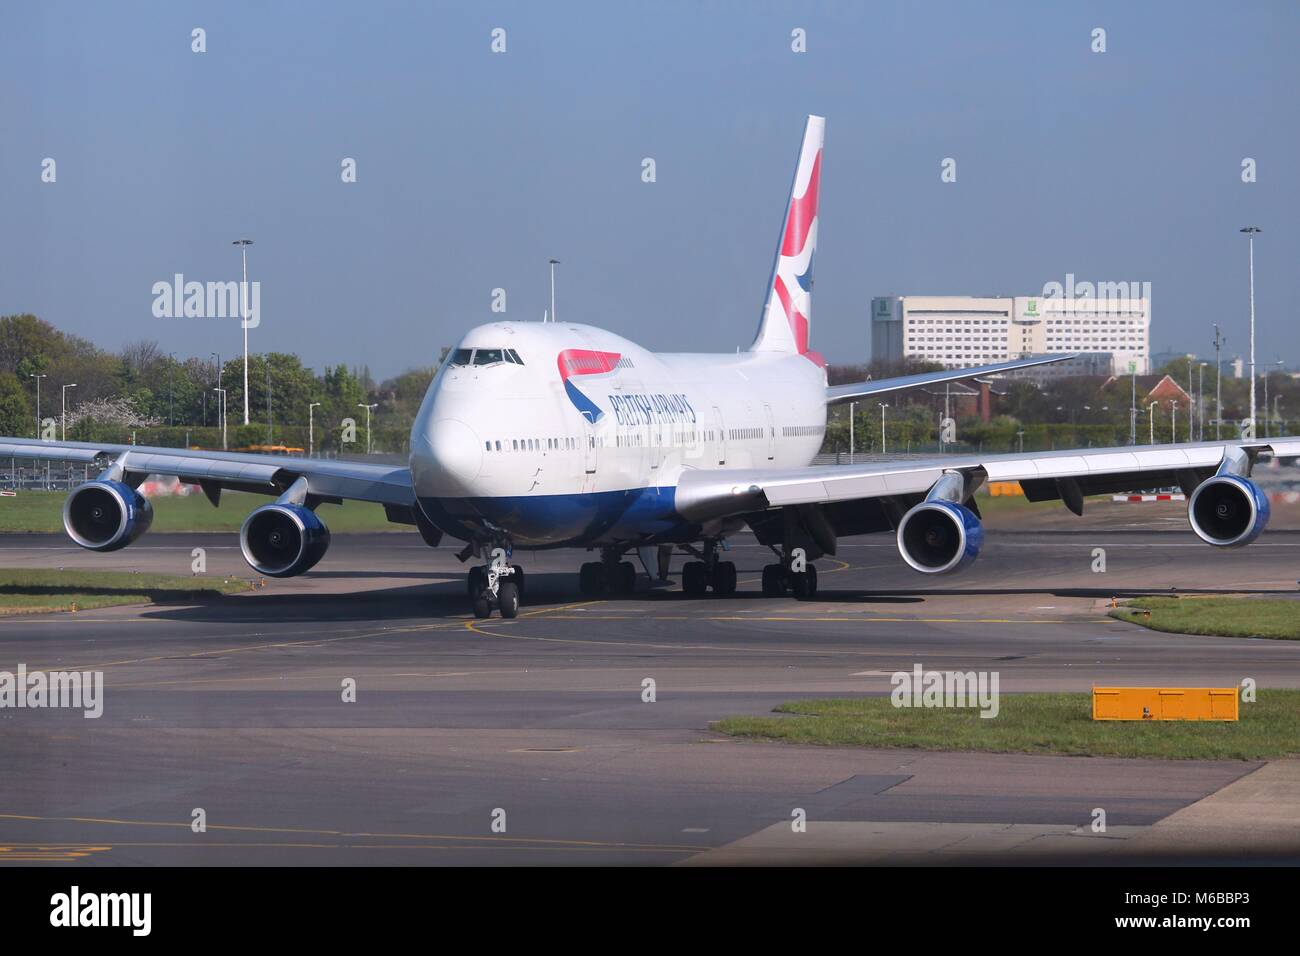 LONDON, Regno Unito - 16 Aprile 2014: British Airways Boeing 747 dopo l'atterraggio all'aeroporto di Londra Heathrow. BA opera flotta di 283 aeromobili (il più grande nel Regno Unito Foto Stock